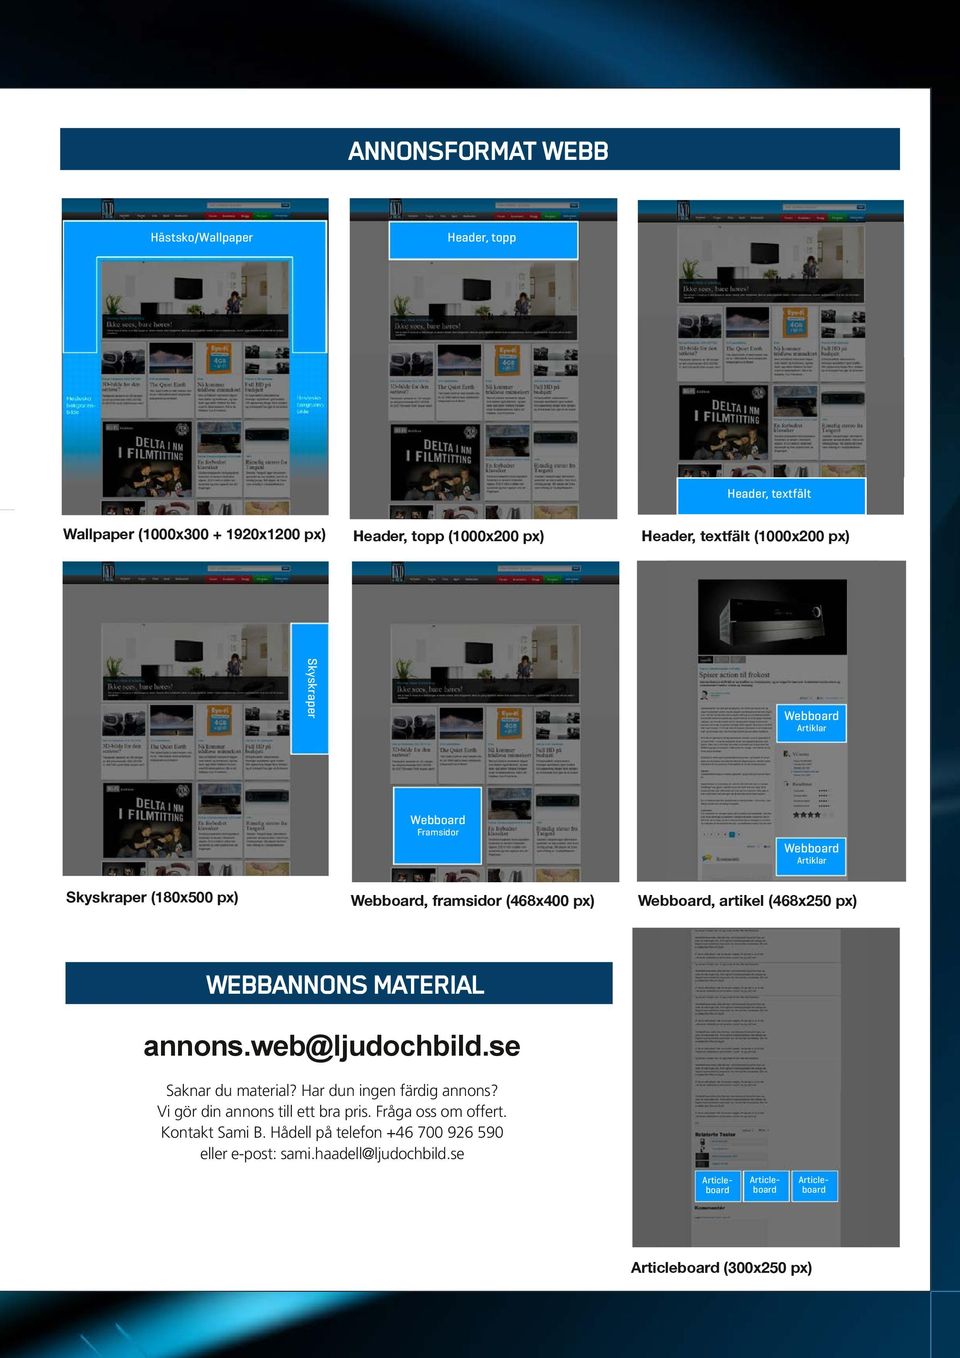 px) WEBBANNONS MATERIAL annons.web@ljudochbild.se Saknar du material? Har dun ingen färdig annons? Vi gör din annons till ett bra pris. Fråga oss om offert.